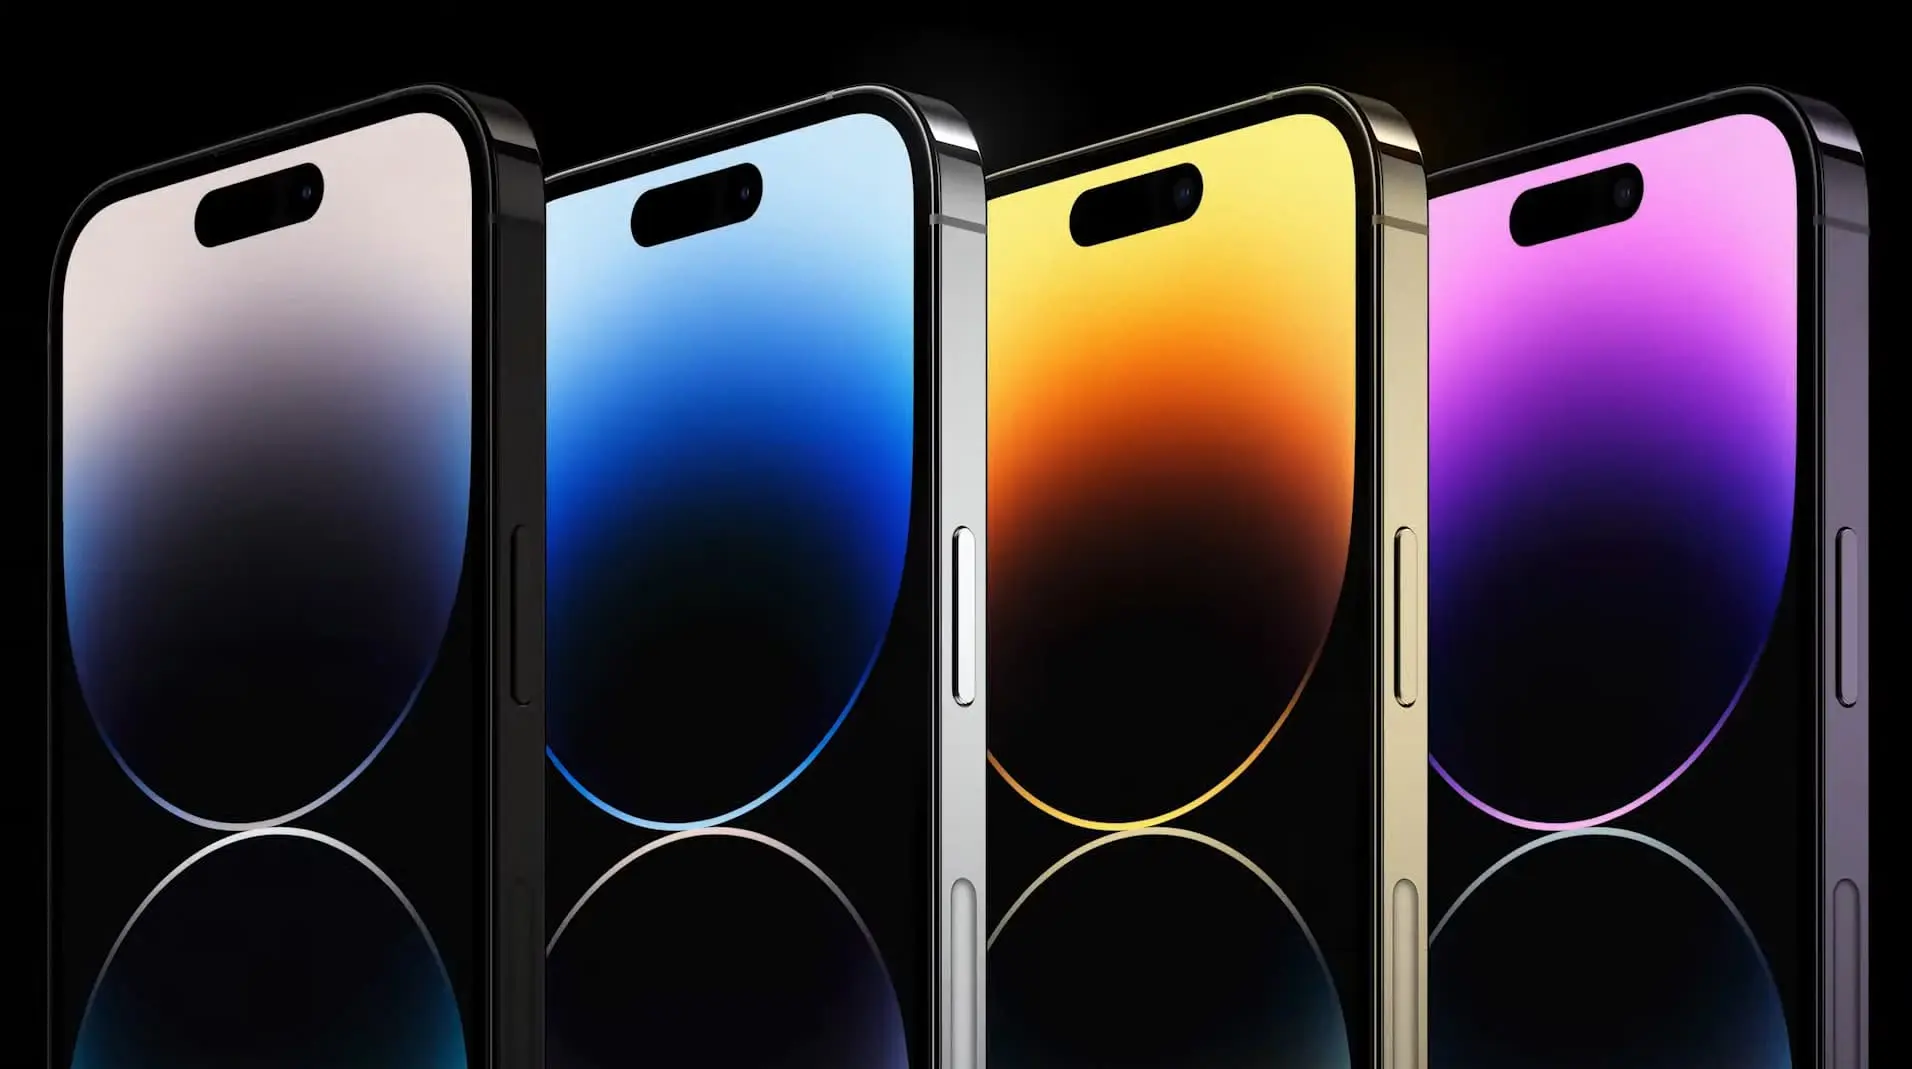 vier iphones in de kleuren zwart, wit, geel en paars op een donkere achtergrond